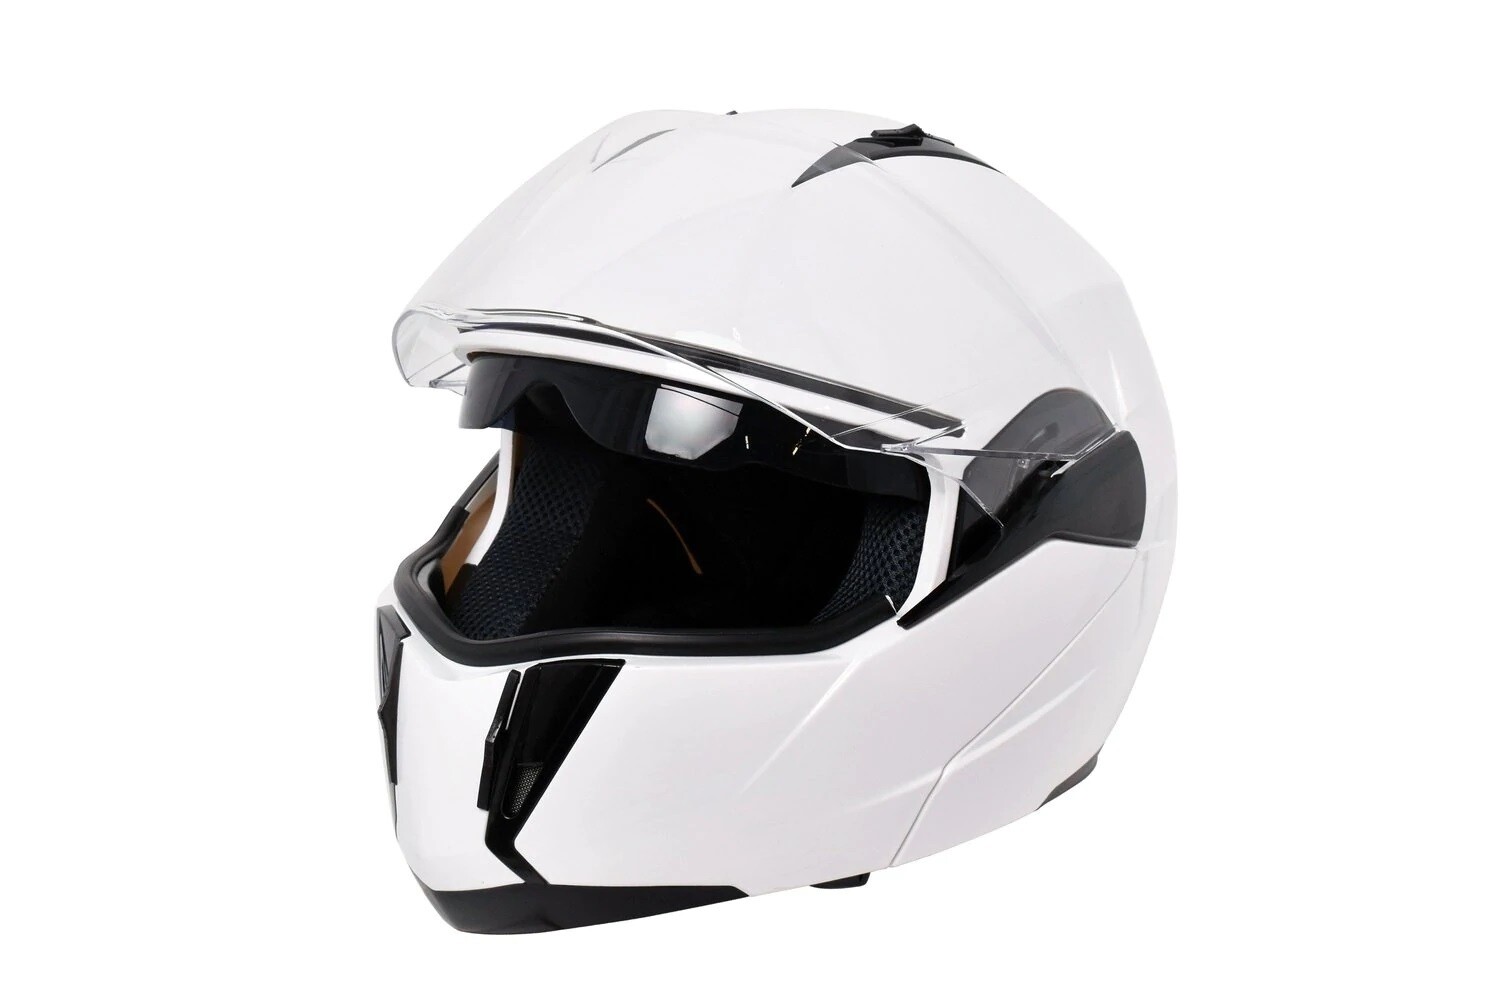 Emmo 168 Scooter Helmet